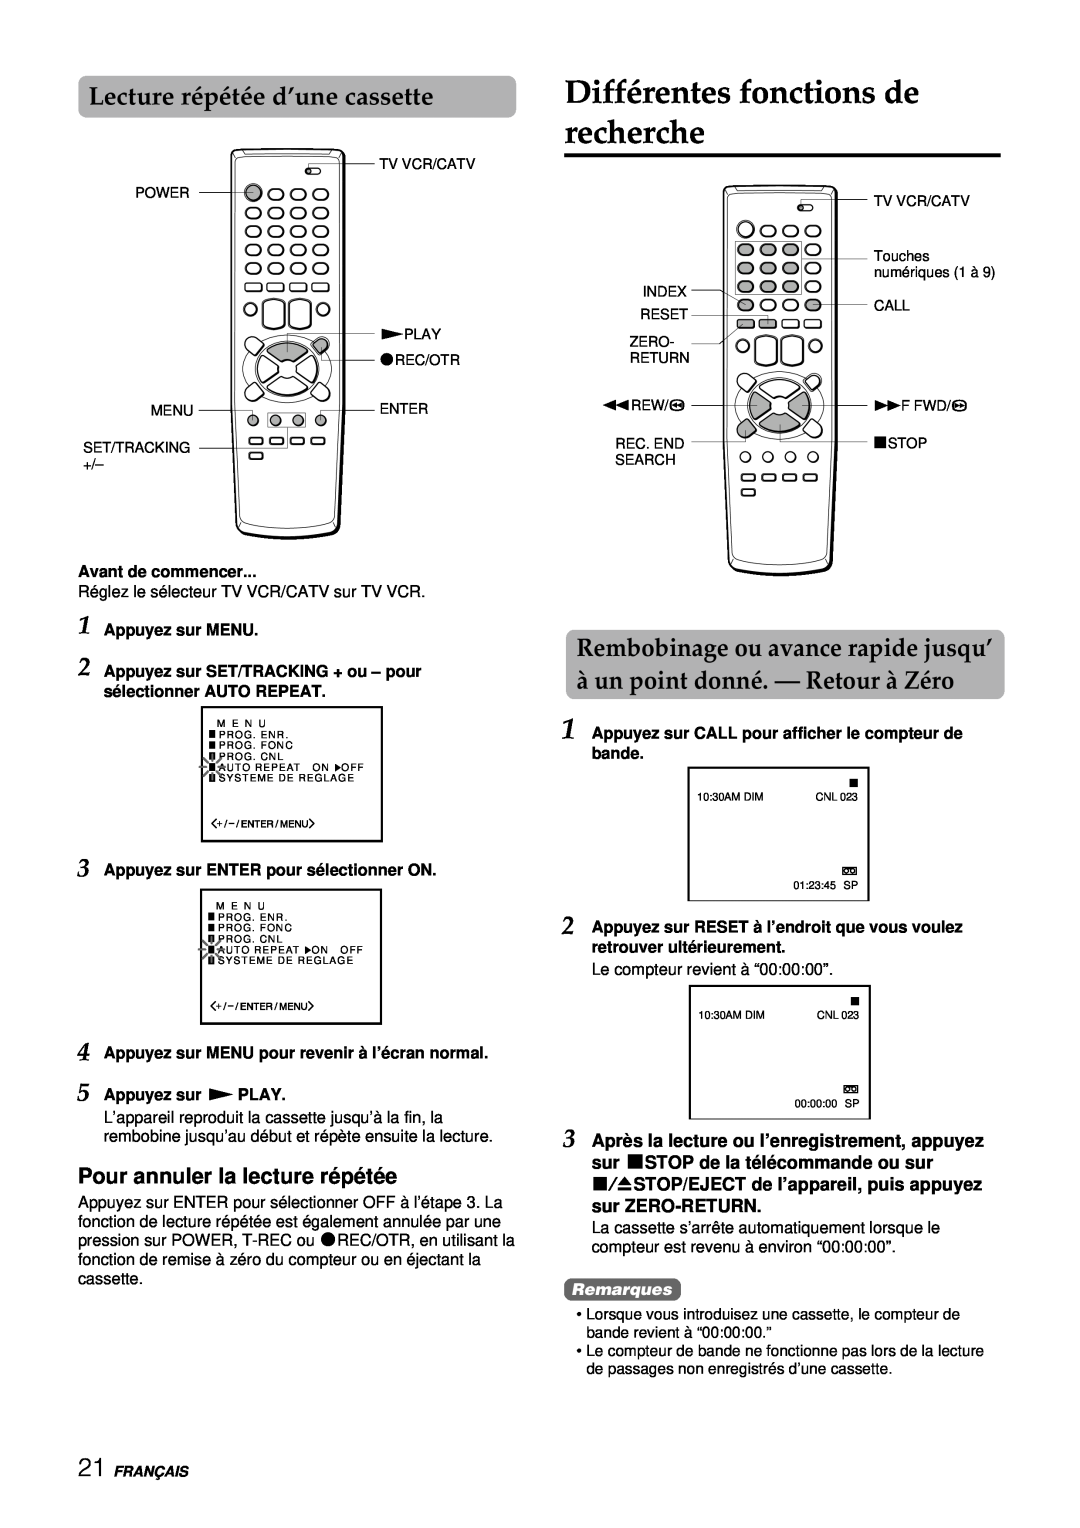 Aiwa VX-S137U manual Différentes fonctions de recherche, Lecture répétée d’une cassette, Pour annuler la lecture ré pé té e 